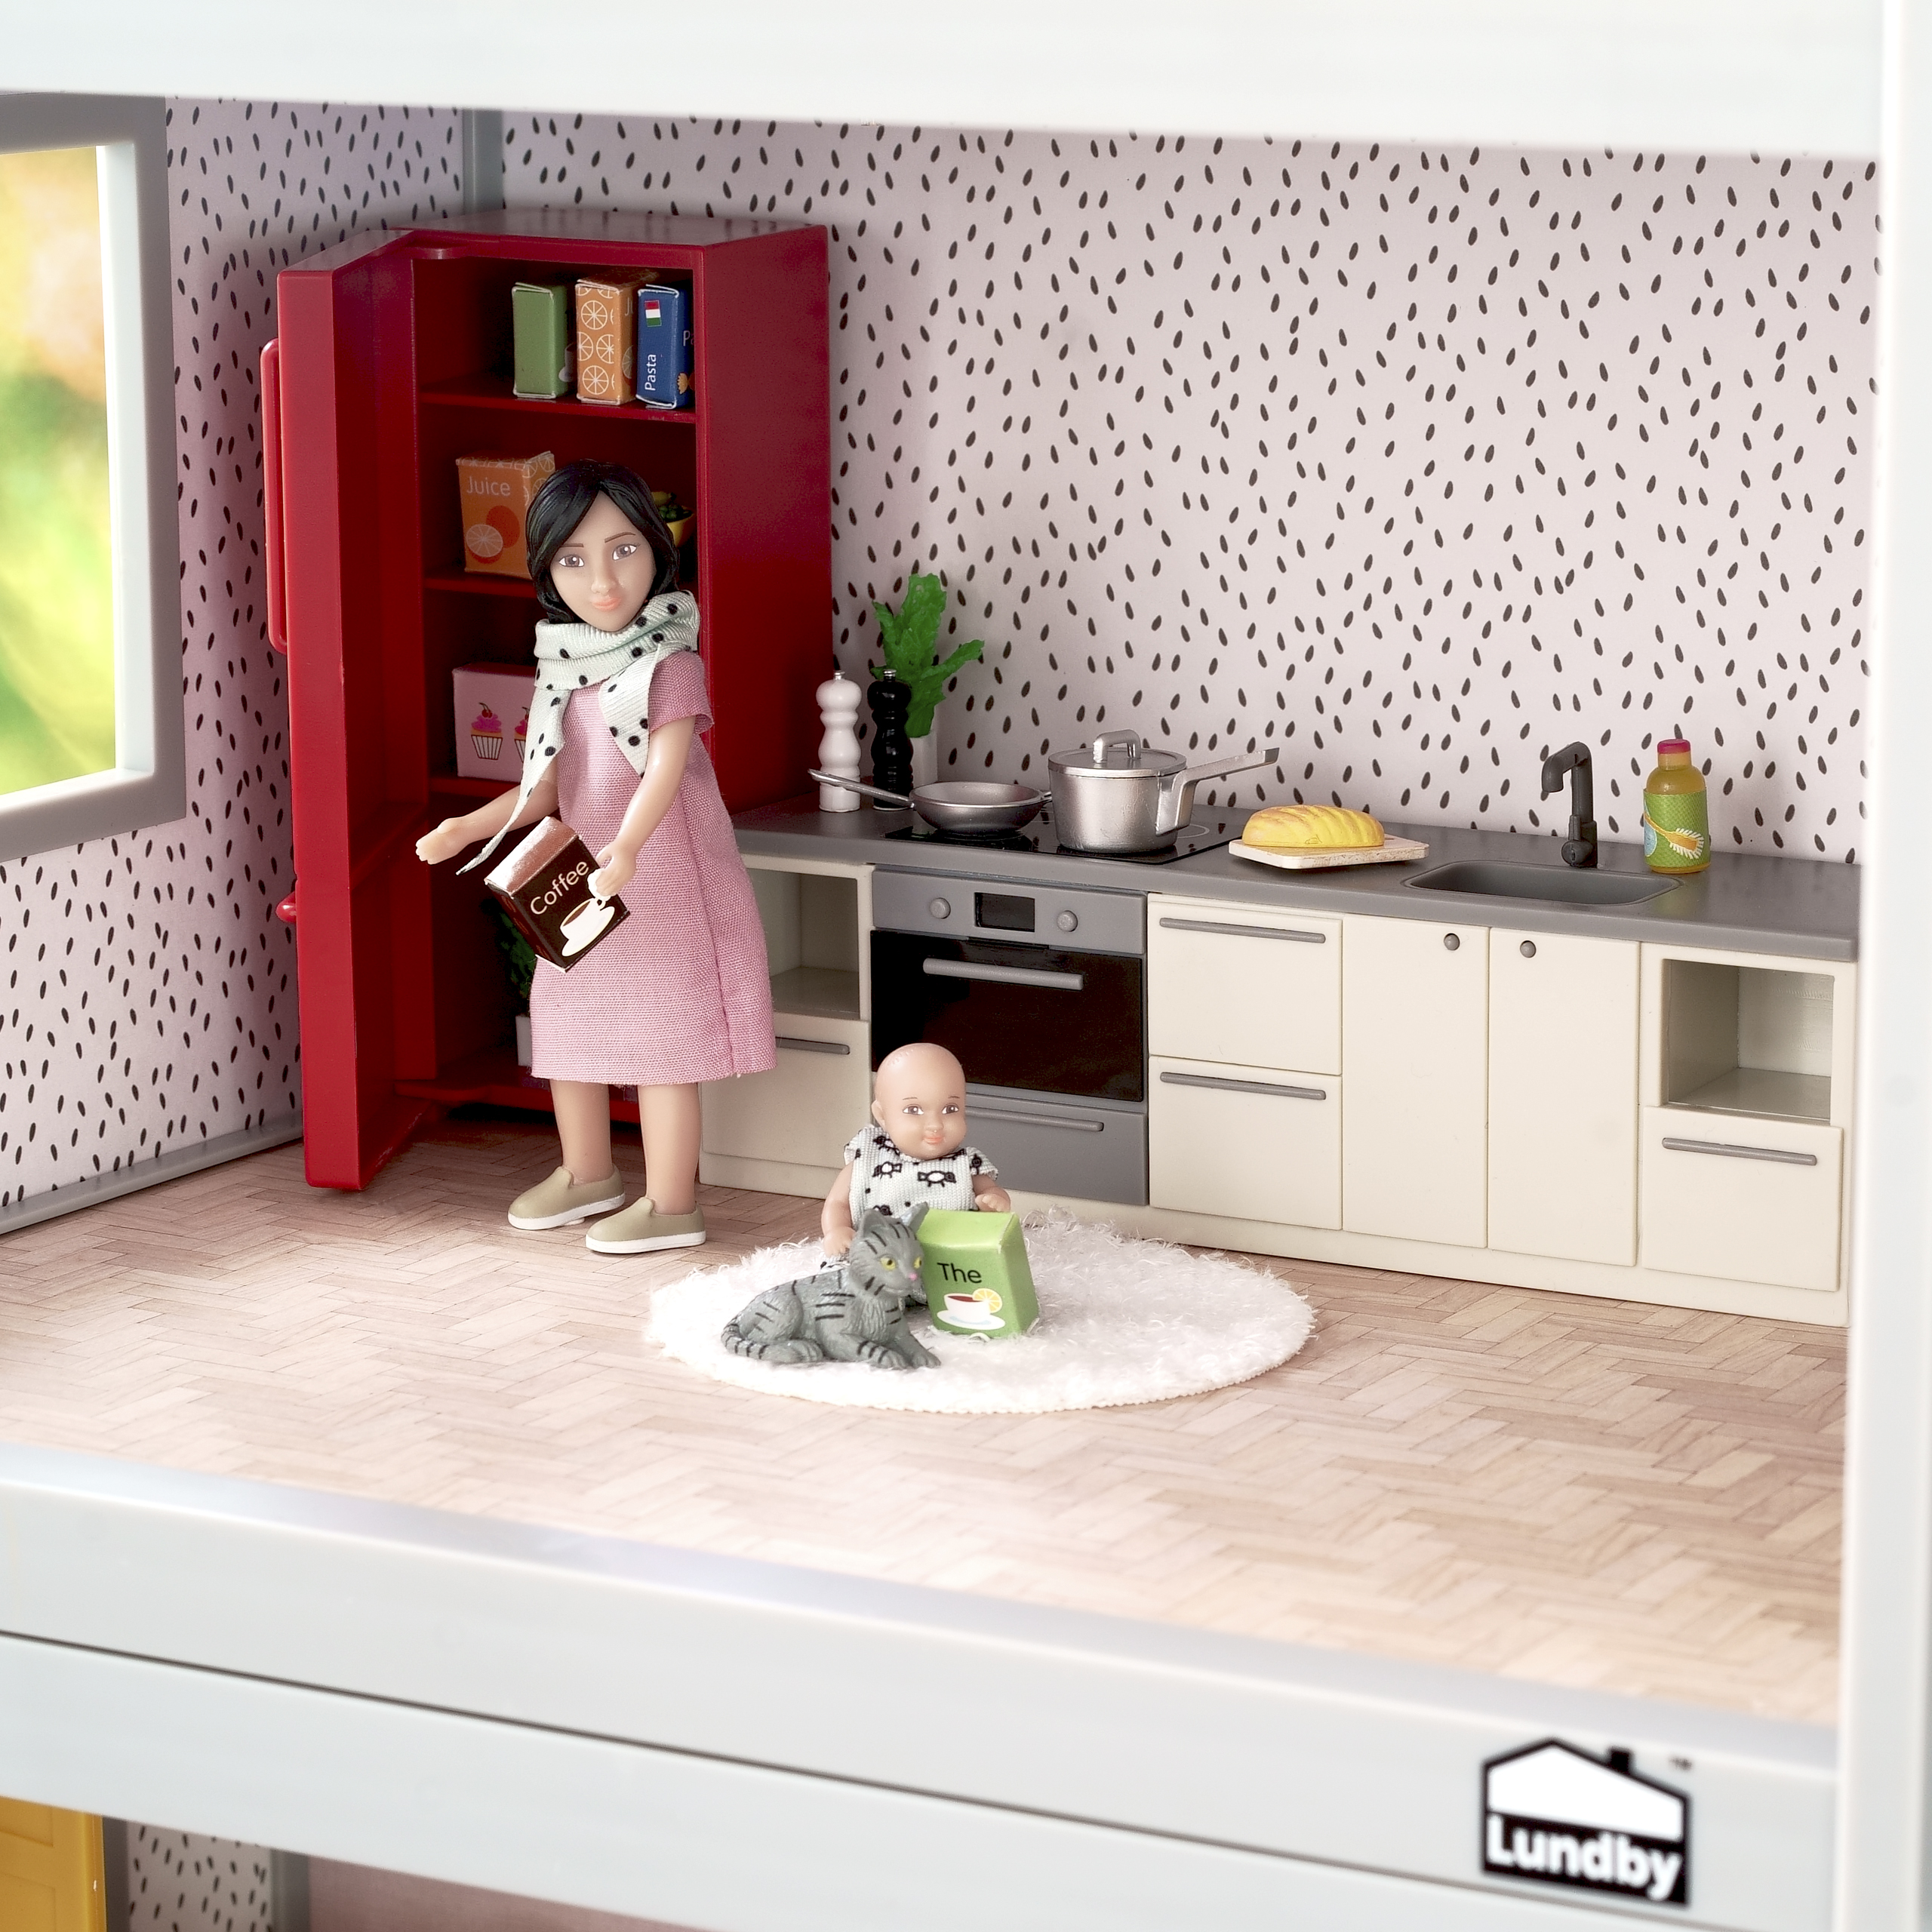 Lundby lundby dollhouse furniture kitchen fridge, cooker & dishwasher basic